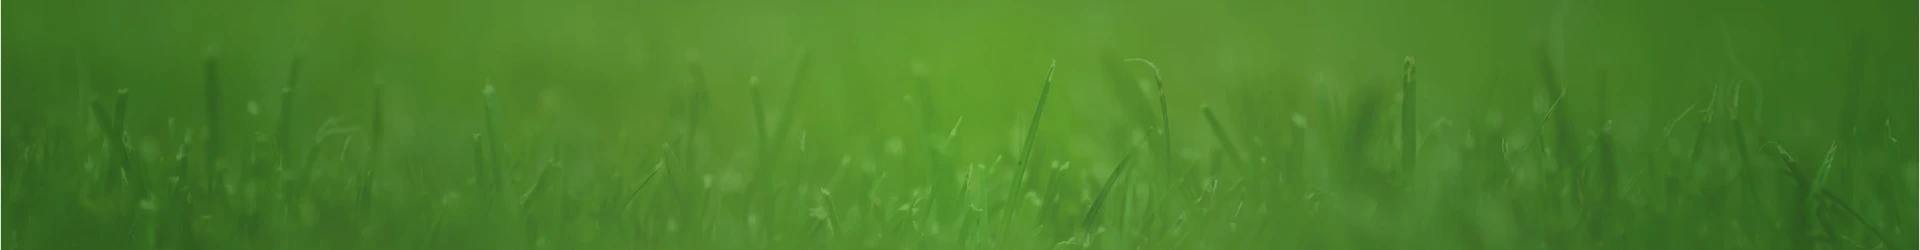 Grass header background image